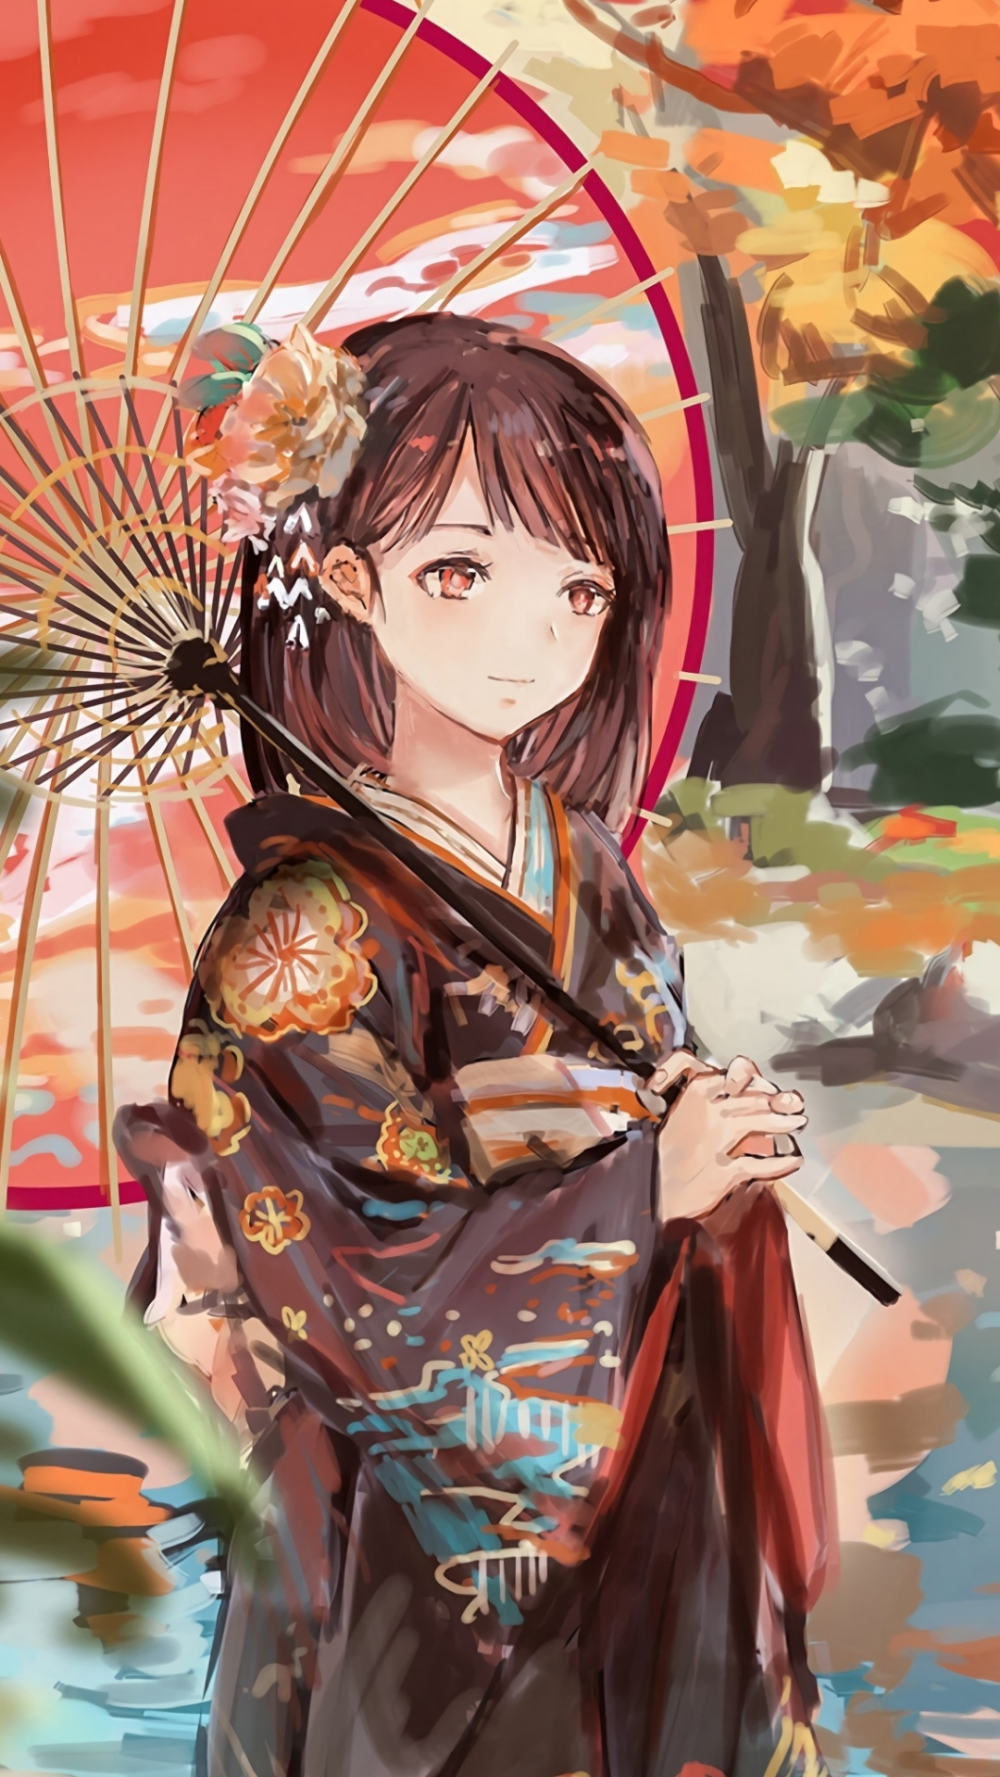 Cùng chiêm ngưỡng vẻ đẹp nổi bật của anime kimono đẹp với những bộ trang phục truyền thống của Nhật Bản, tôn lên vẻ đẹp kiêu sa và thanh lịch của người mặc.